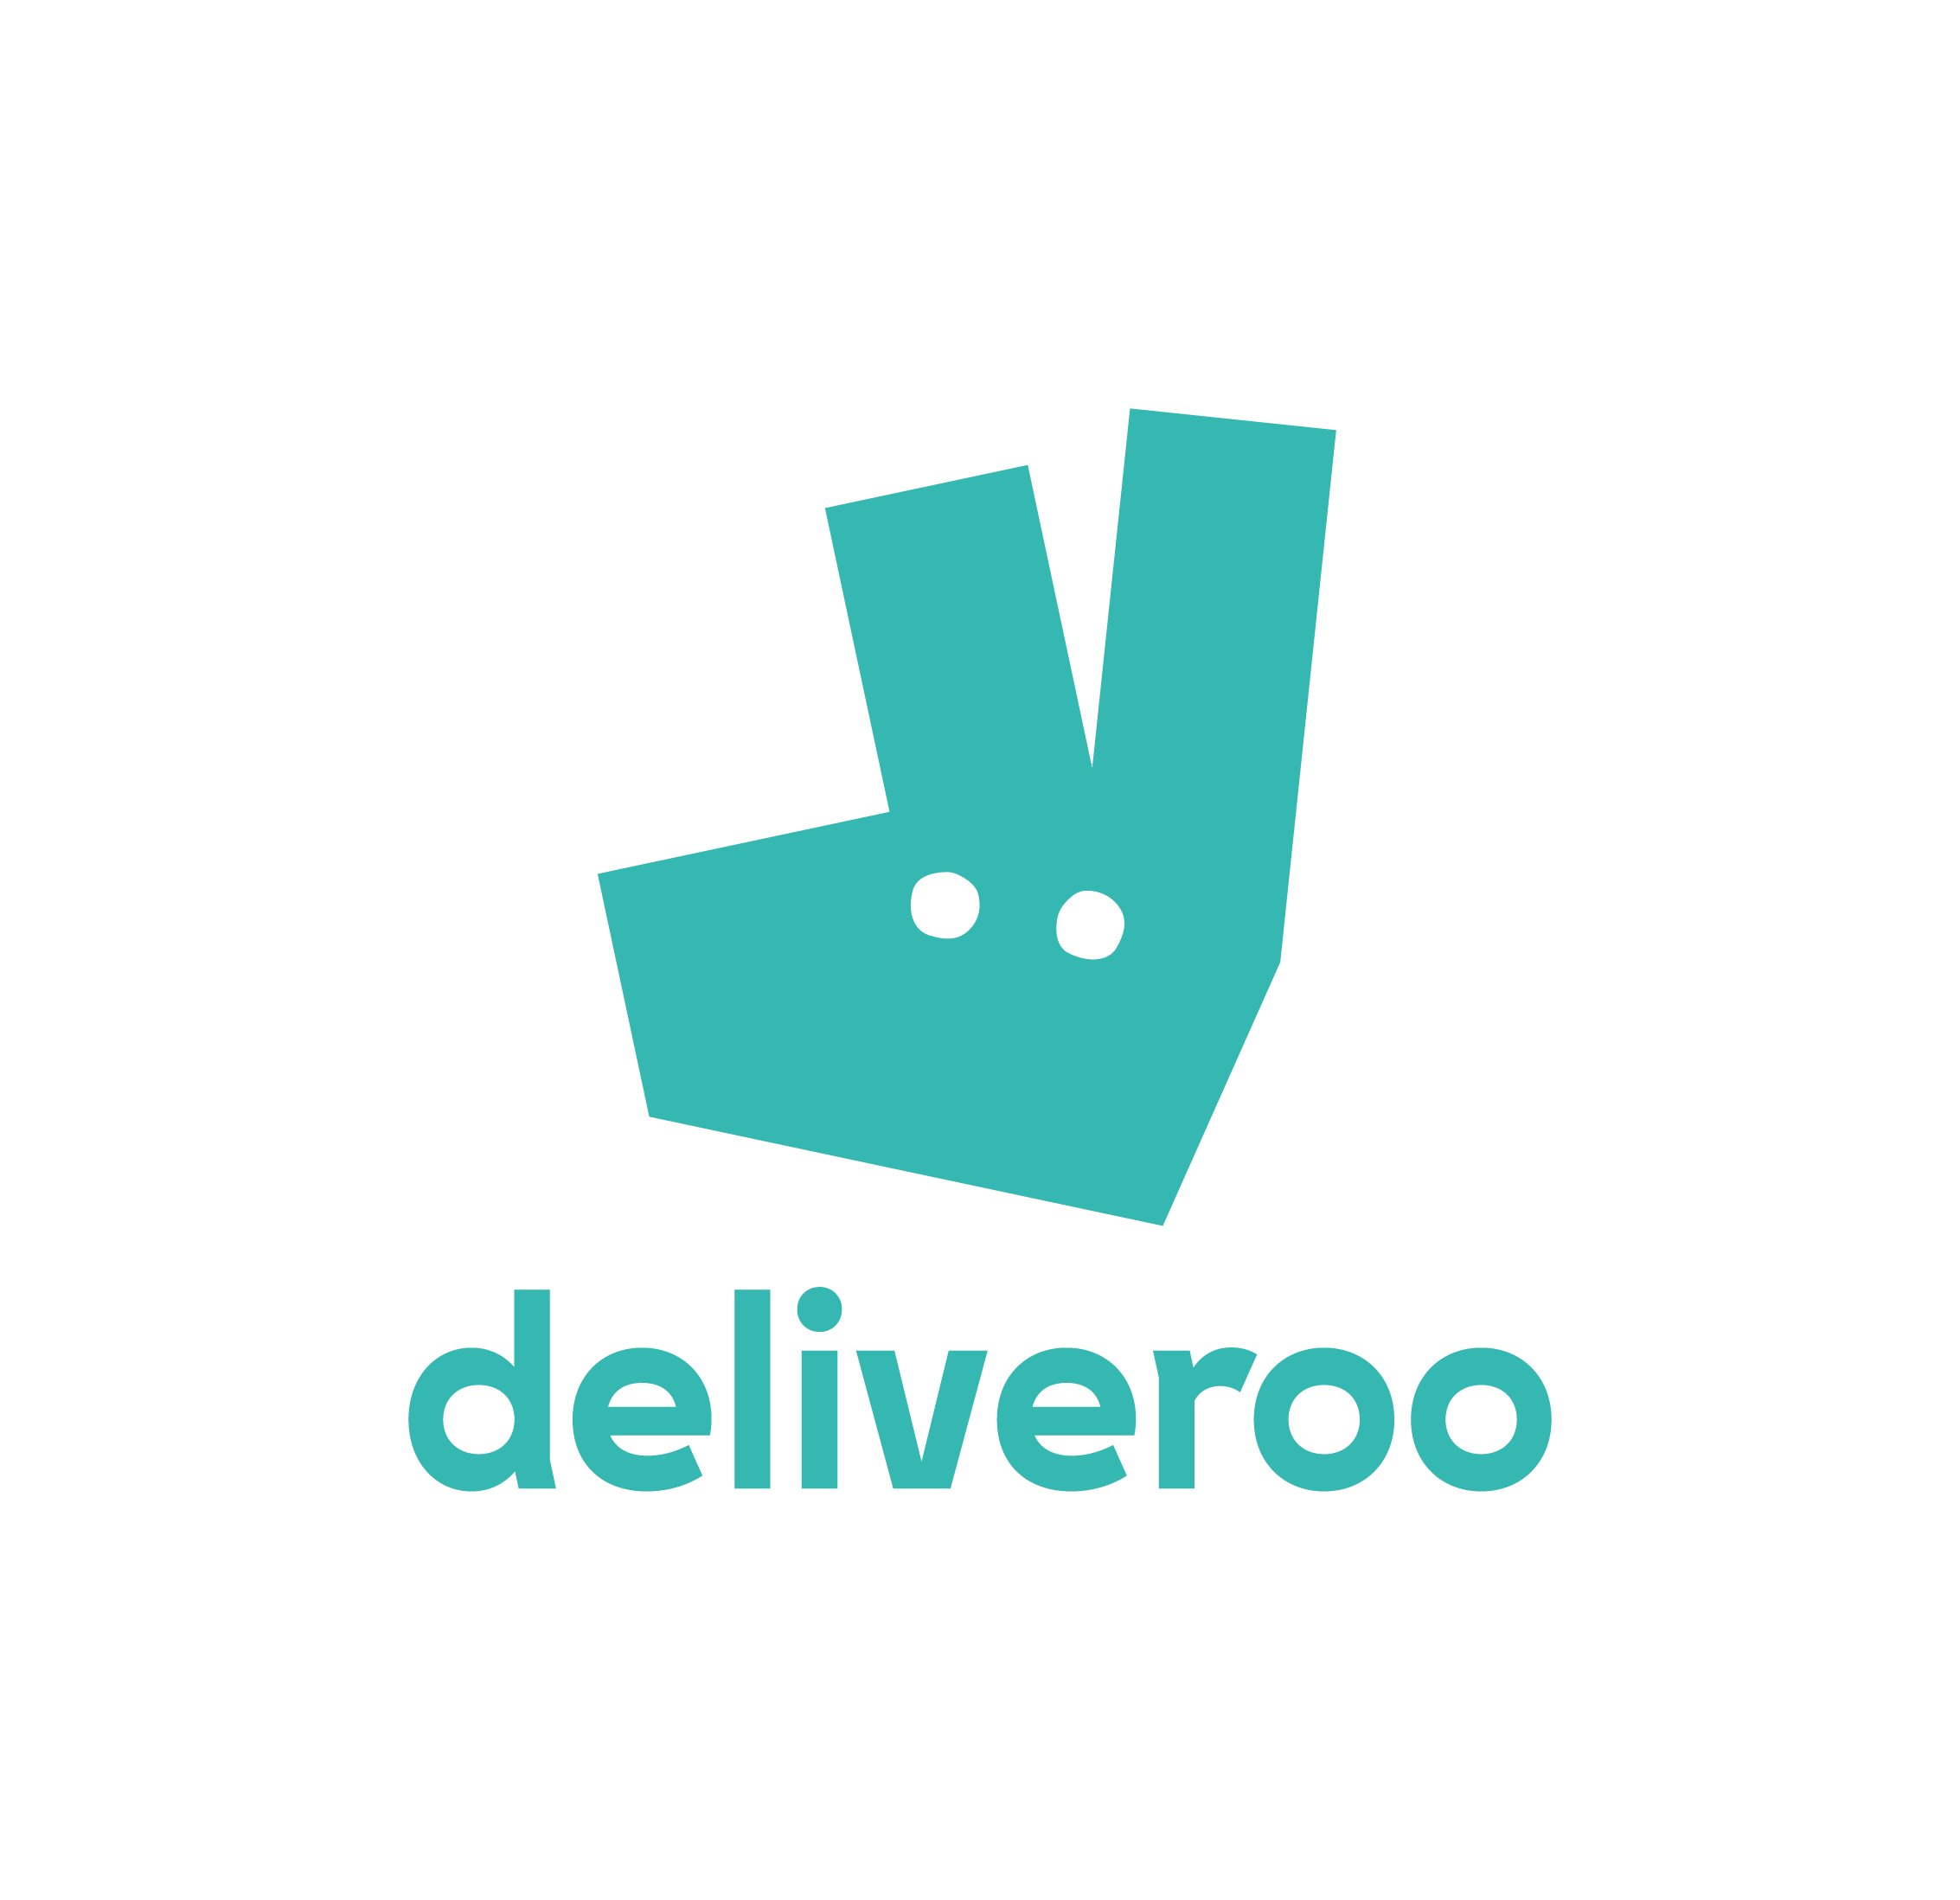 deliveroo - restaurant technology